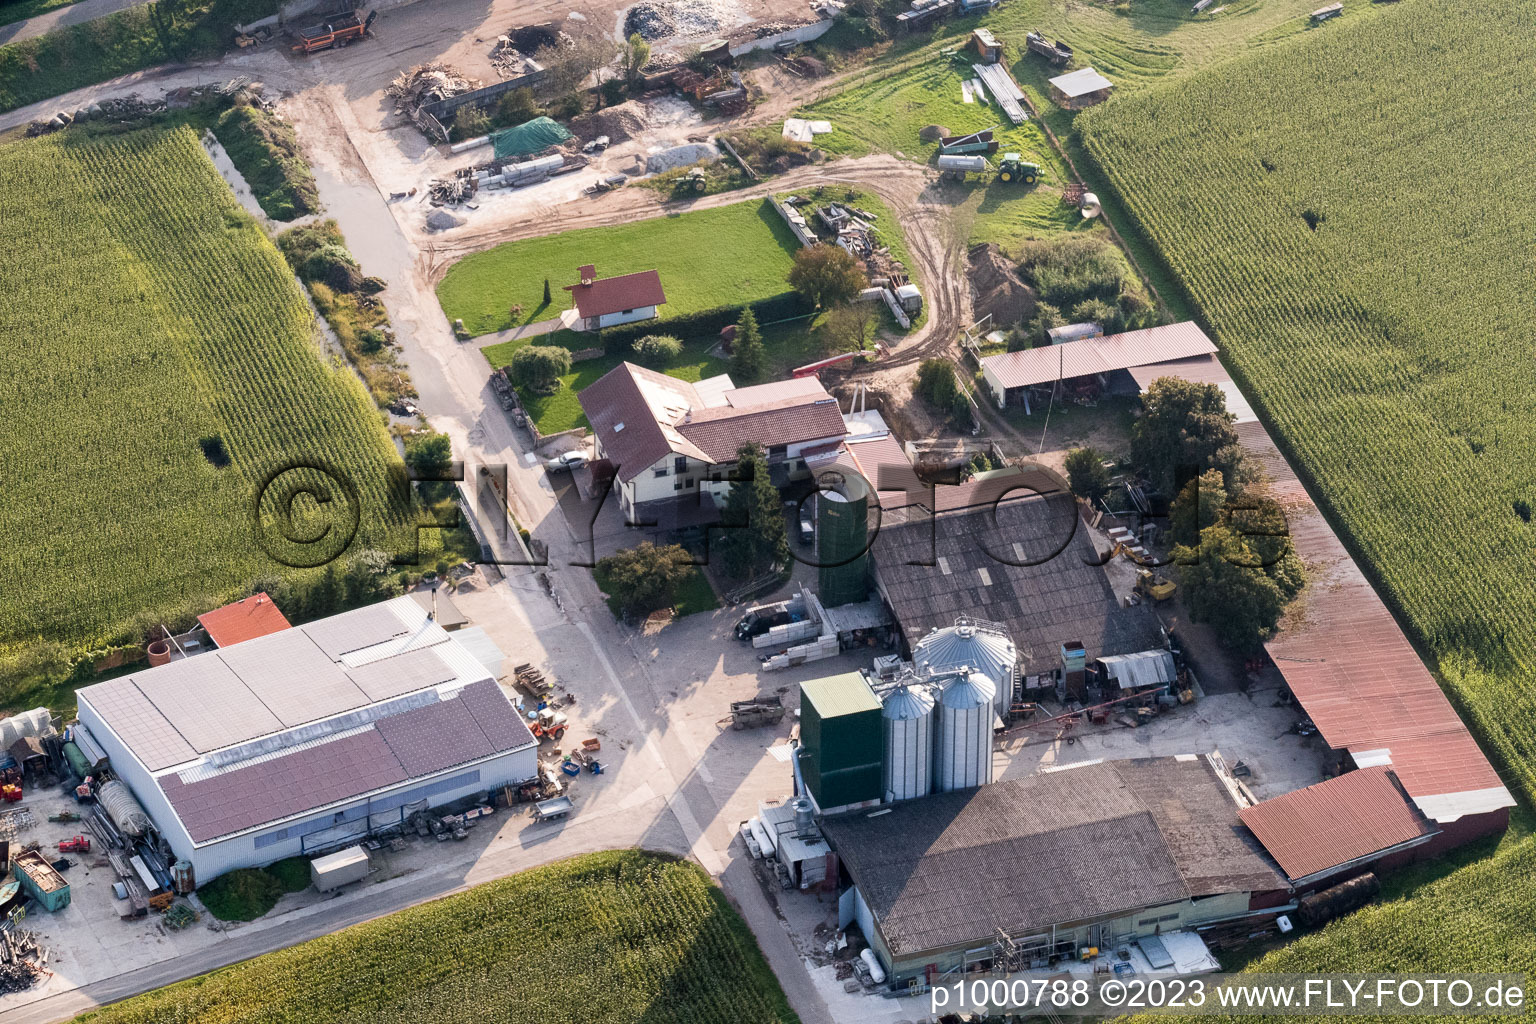 Vue aérienne de Propriété d'une ferme Richard Jungkind Recyclage Wendelinushof à le quartier Rheinsheim in Philippsburg dans le département Bade-Wurtemberg, Allemagne